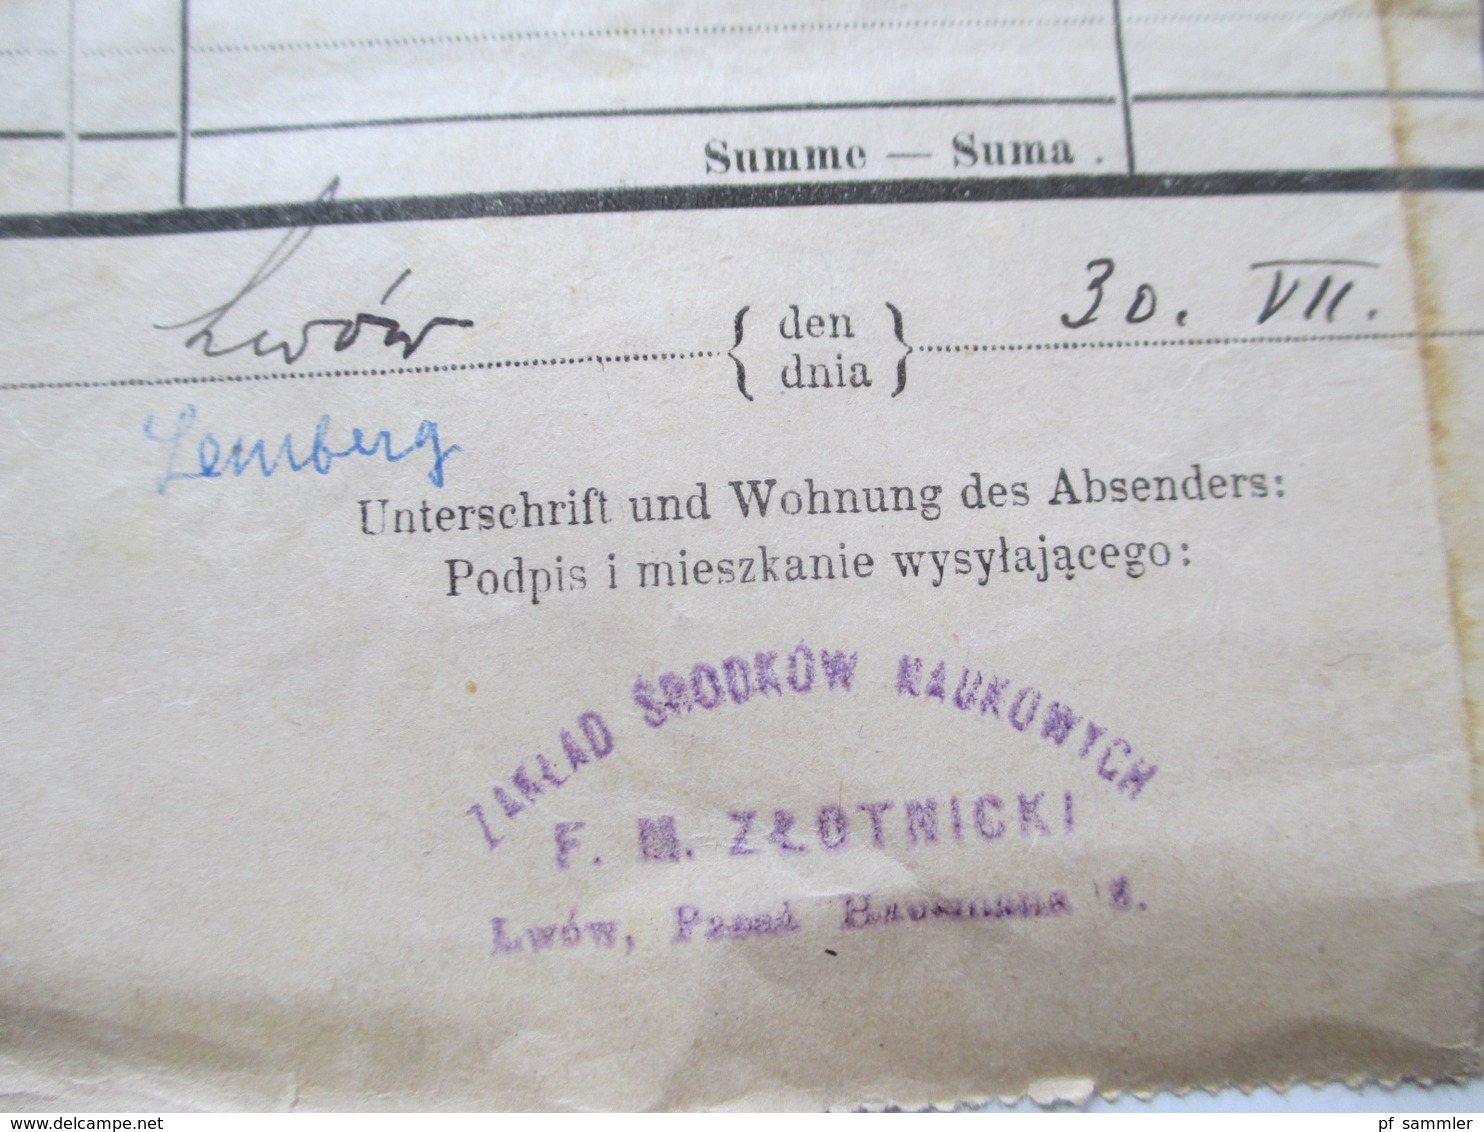 Österreich 1914 Frachtbrief Lemberg - Przemysl viele Stempel / Vermerke!! Sehr interessant!! Bahnpost